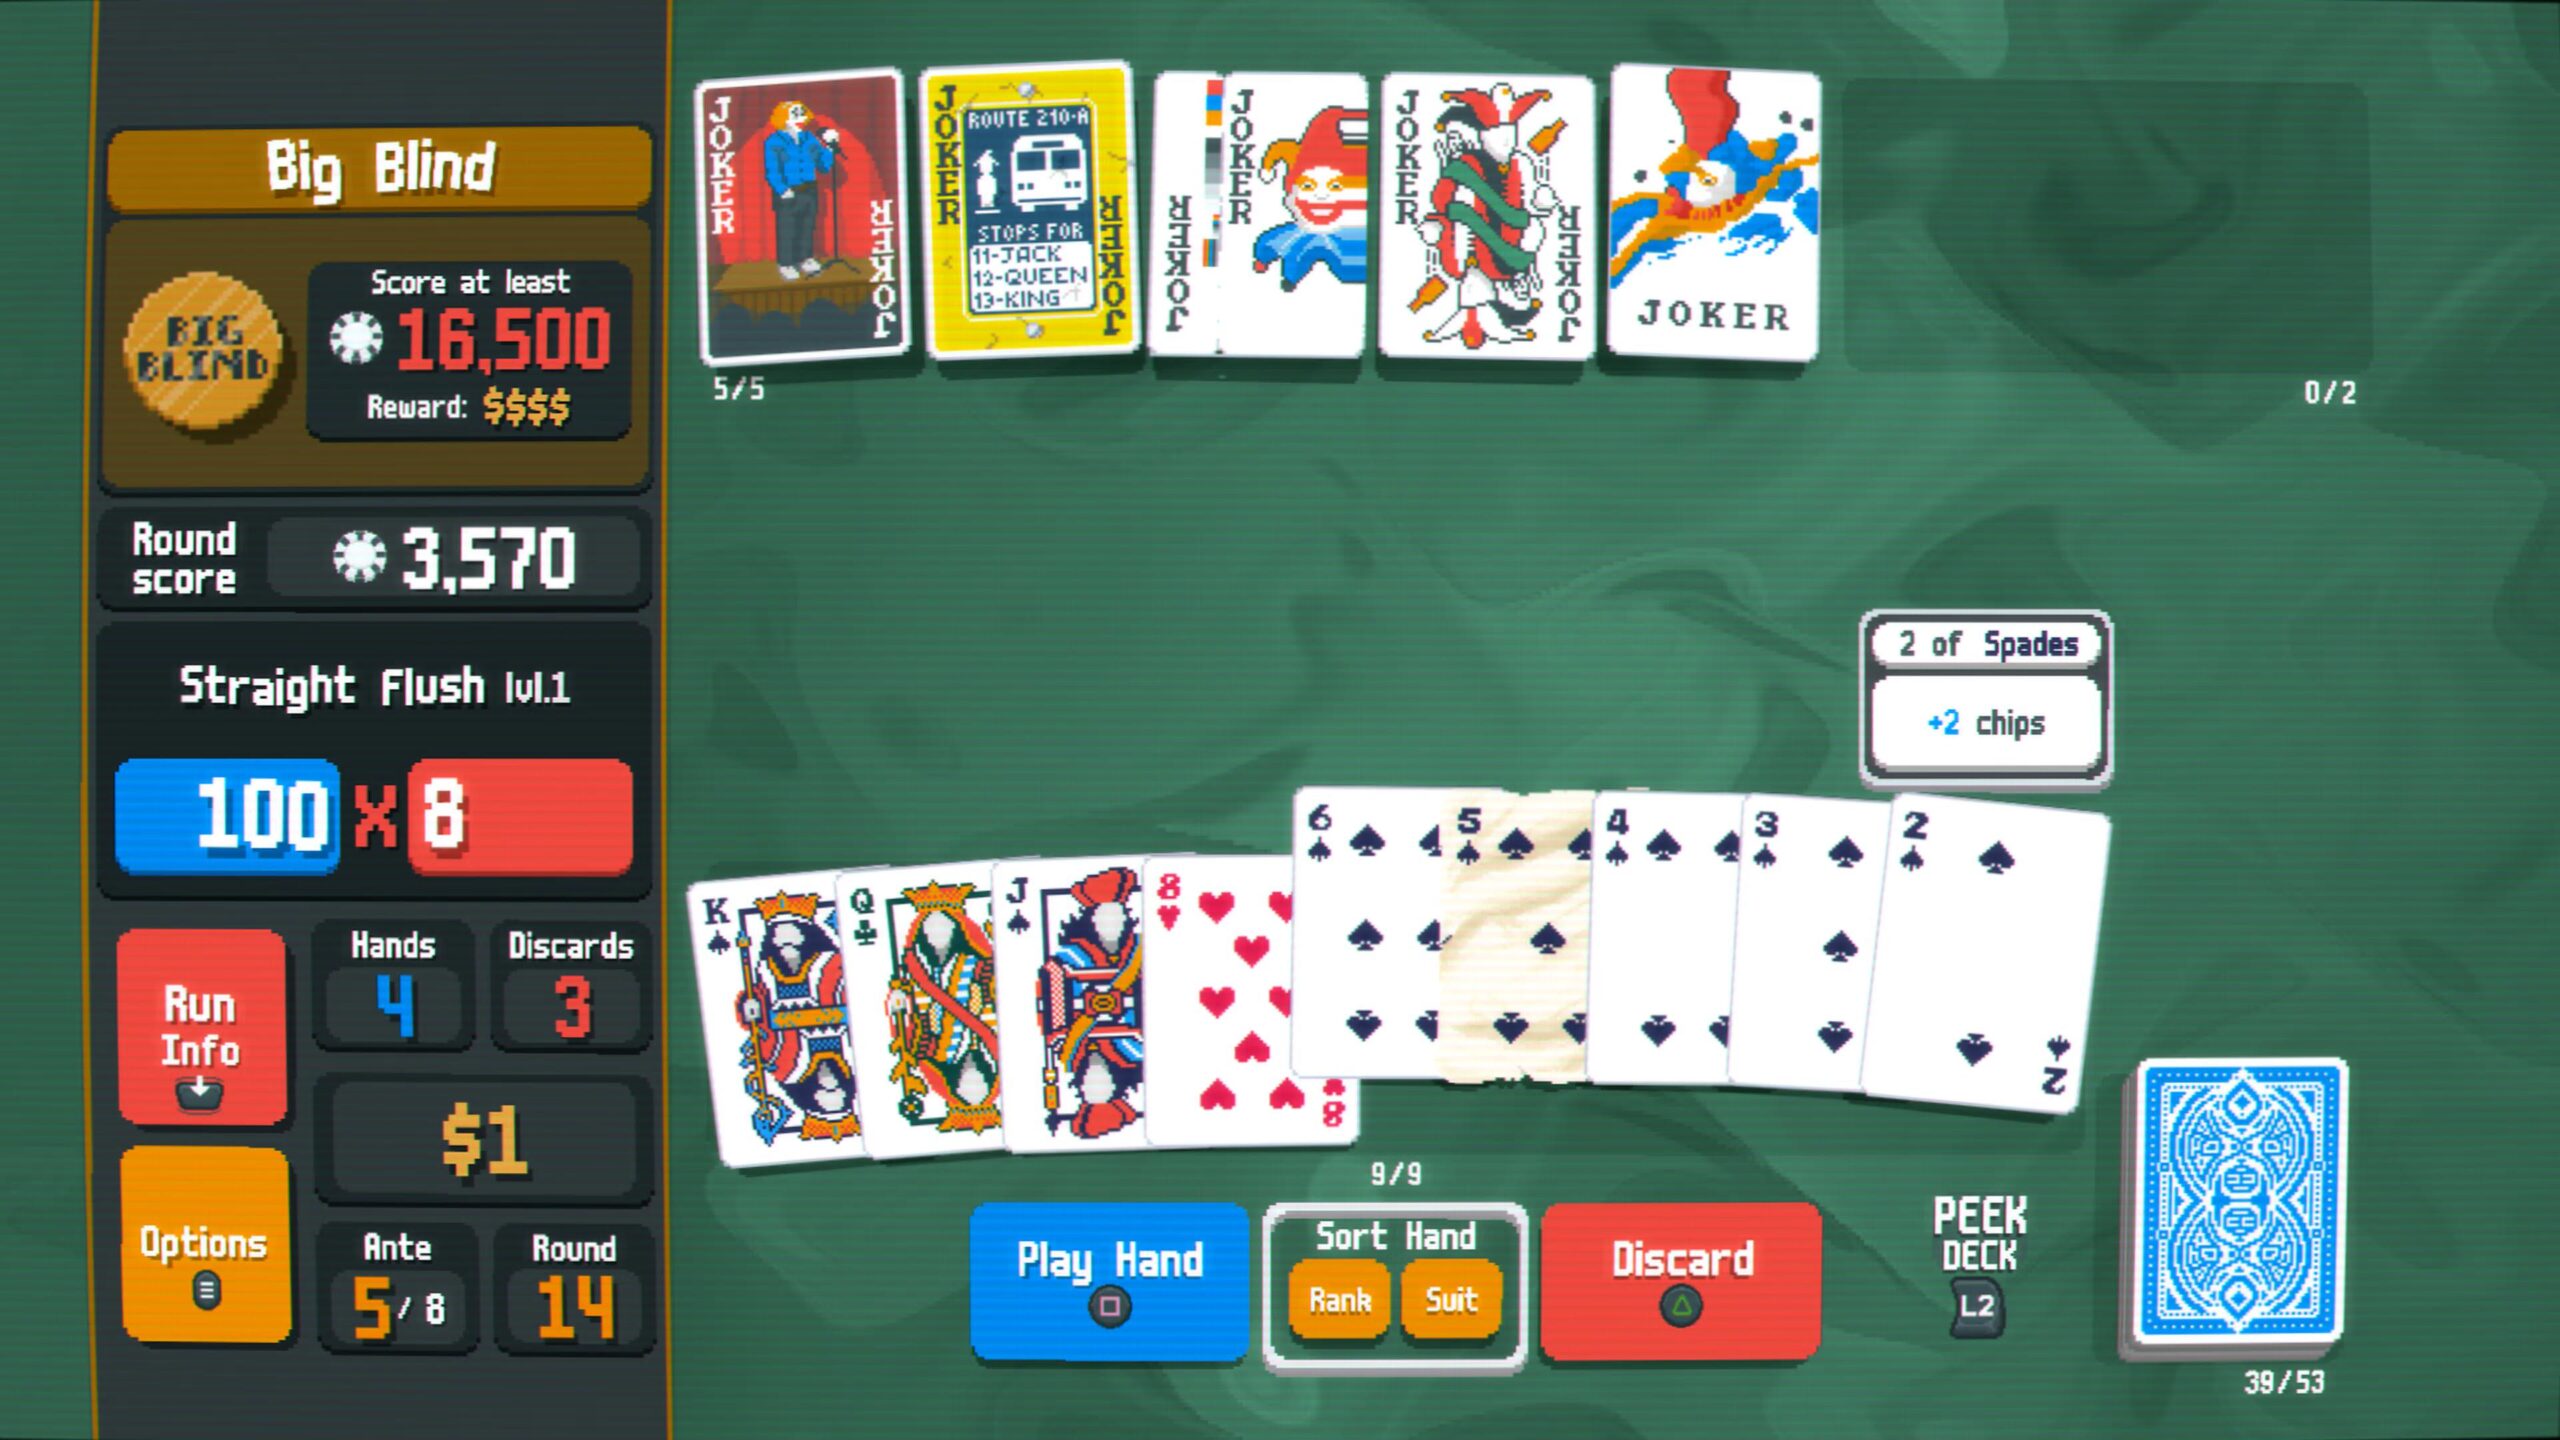 Ekran gry karcianej Balatro z różnymi kartami, w tym jokerami, wyświetlającym punktację i opcje takie jak "Play Hand" oraz "Discard".